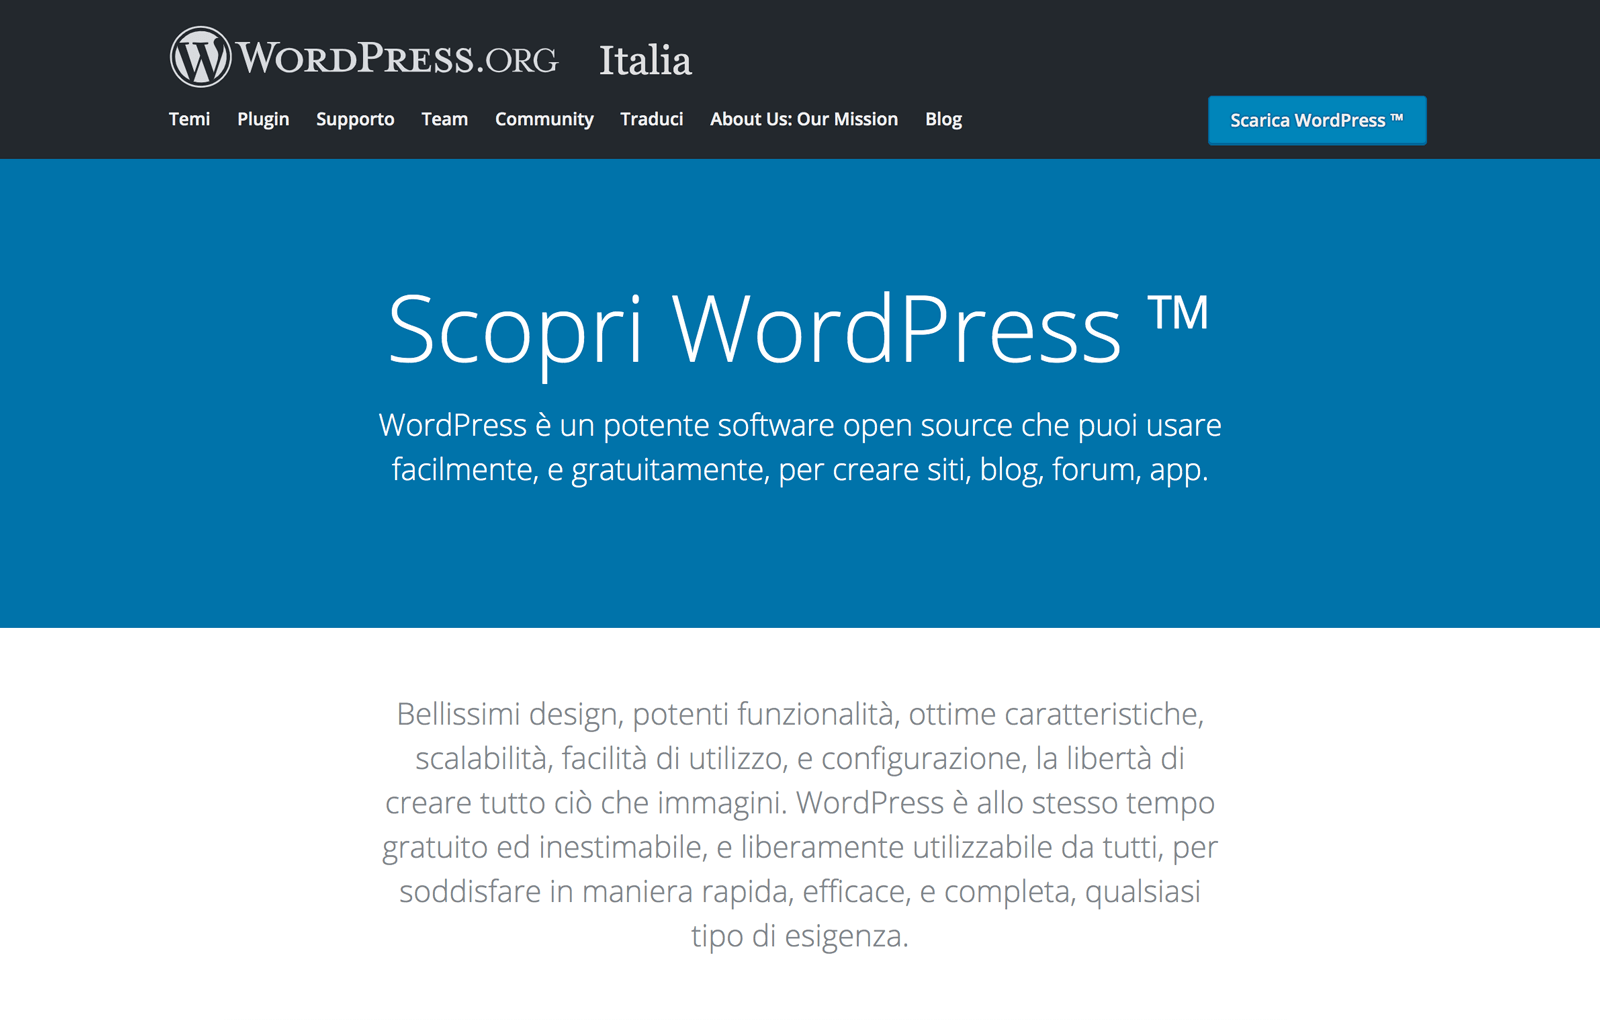 La Homepage italiana di WordPress.org 